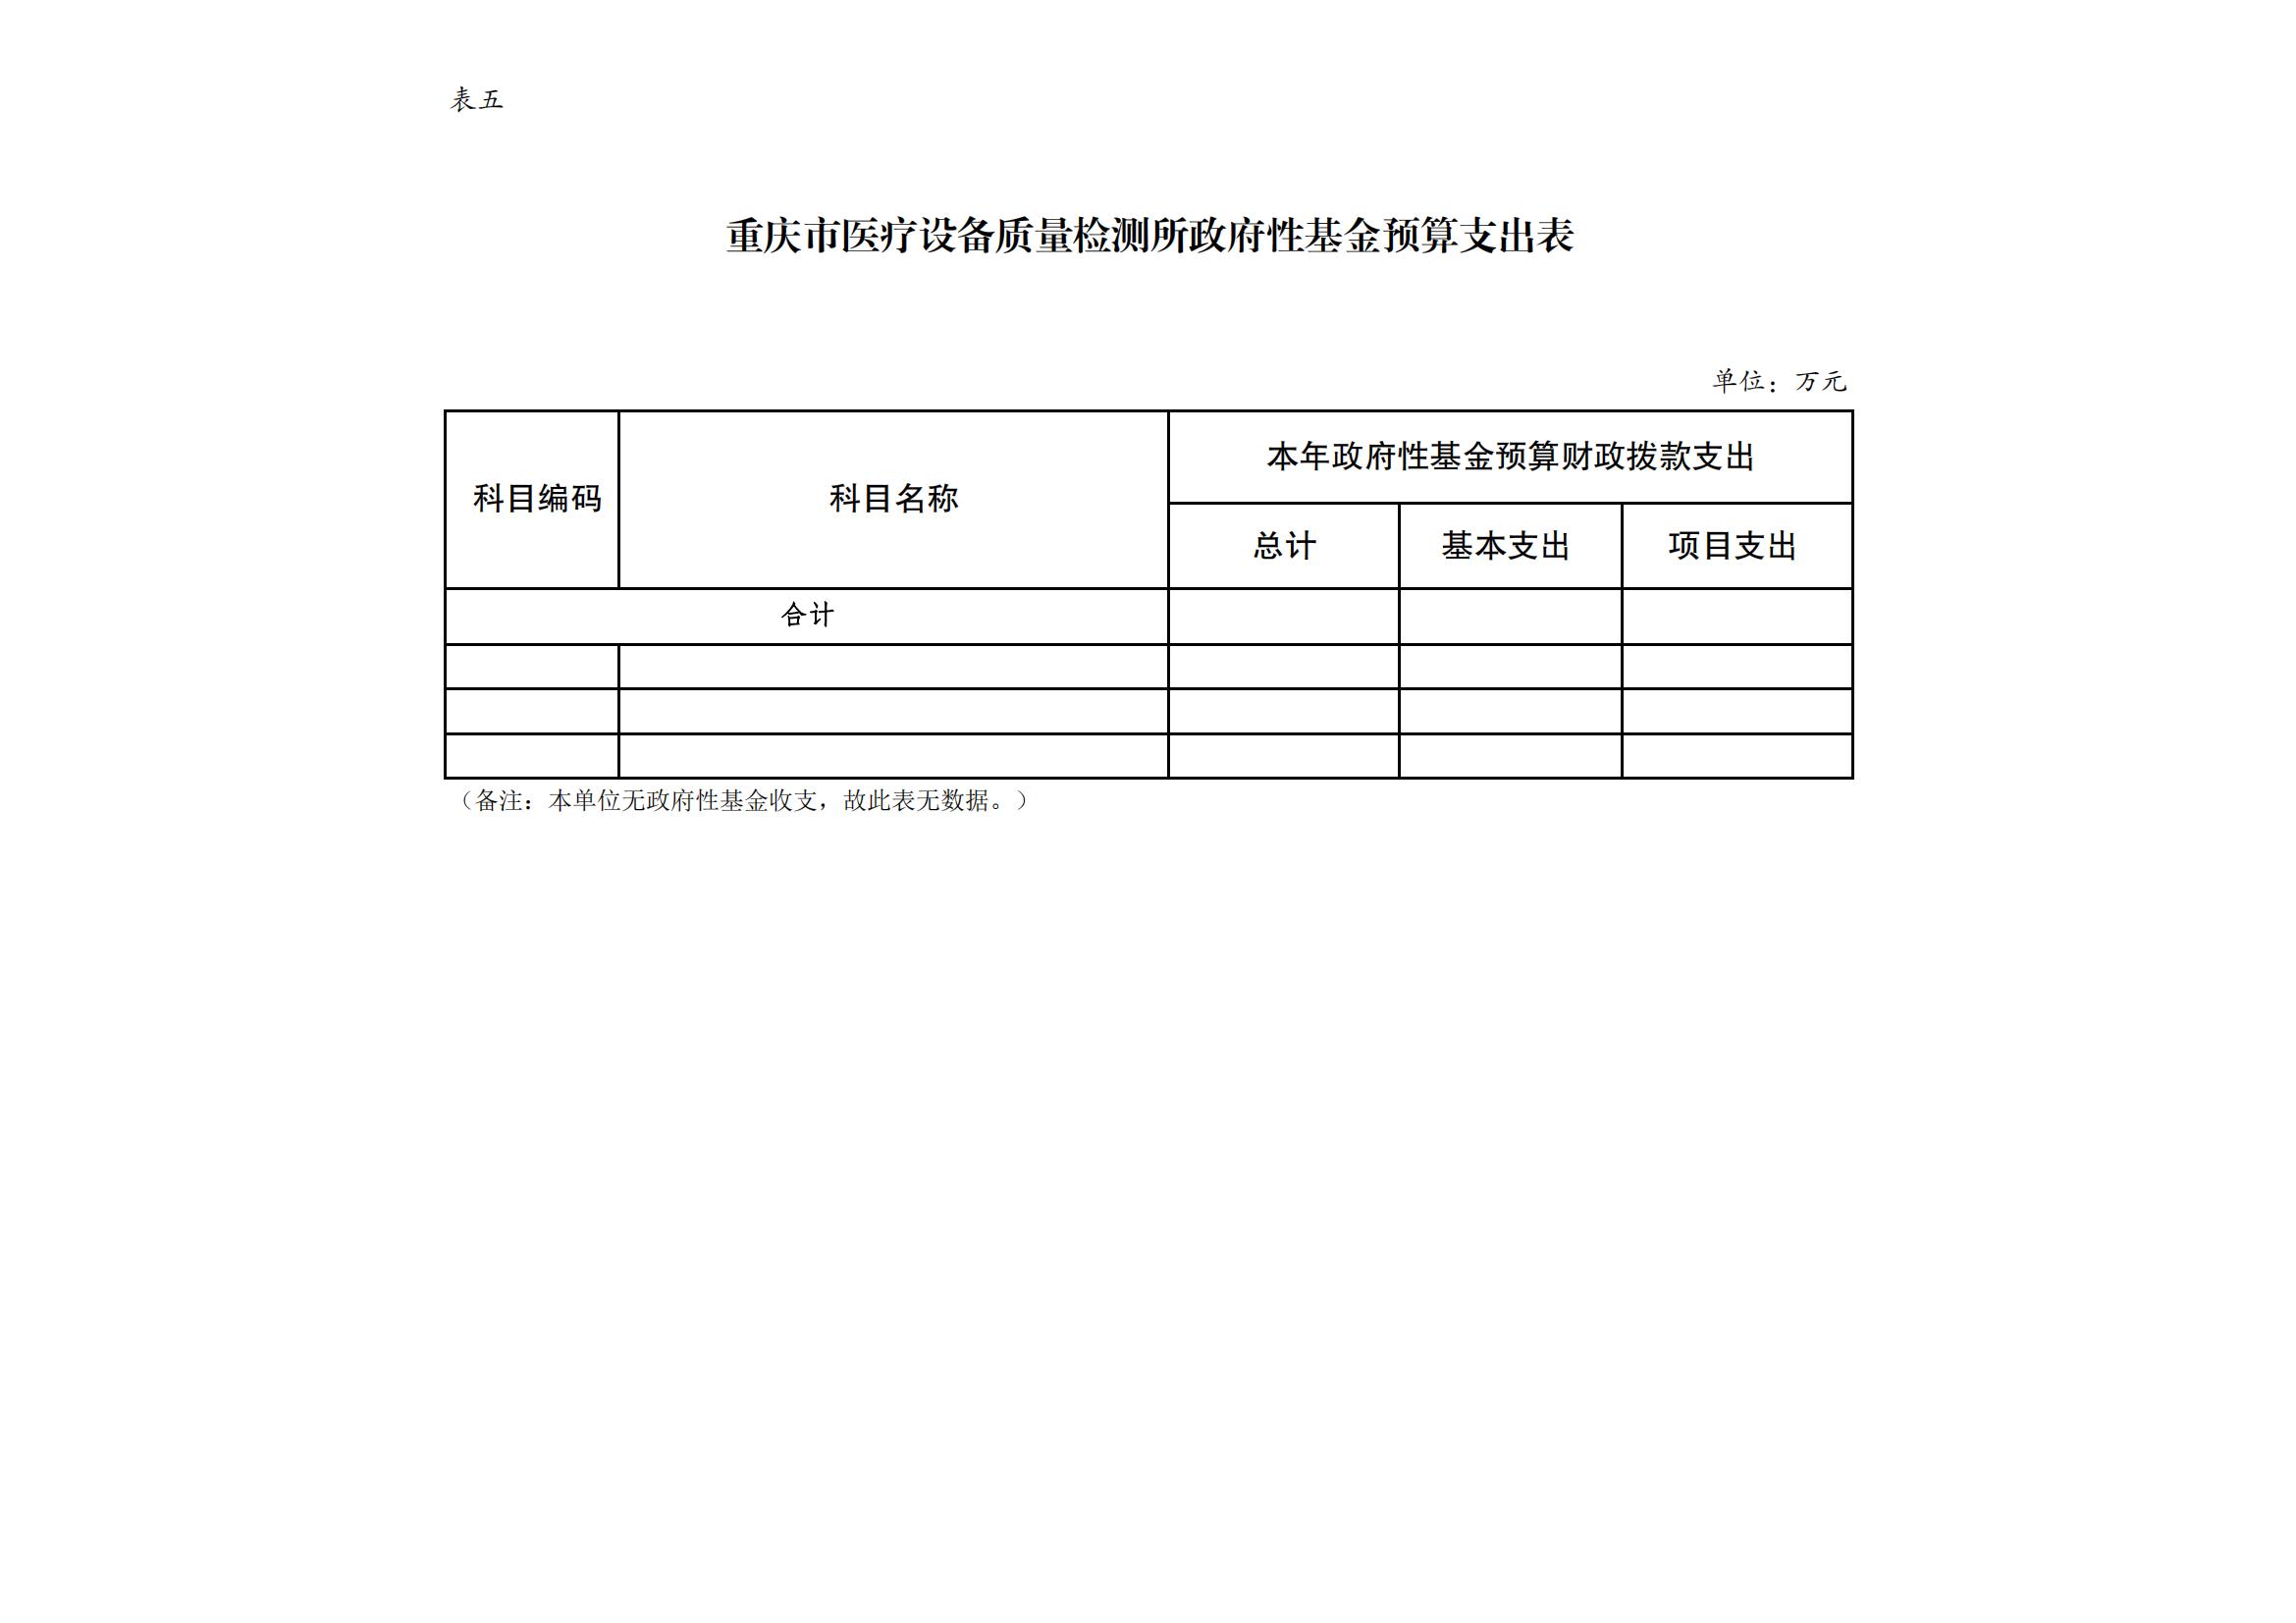 重庆市医疗设备质量检测所2024年单位预算情况说明_08.jpg